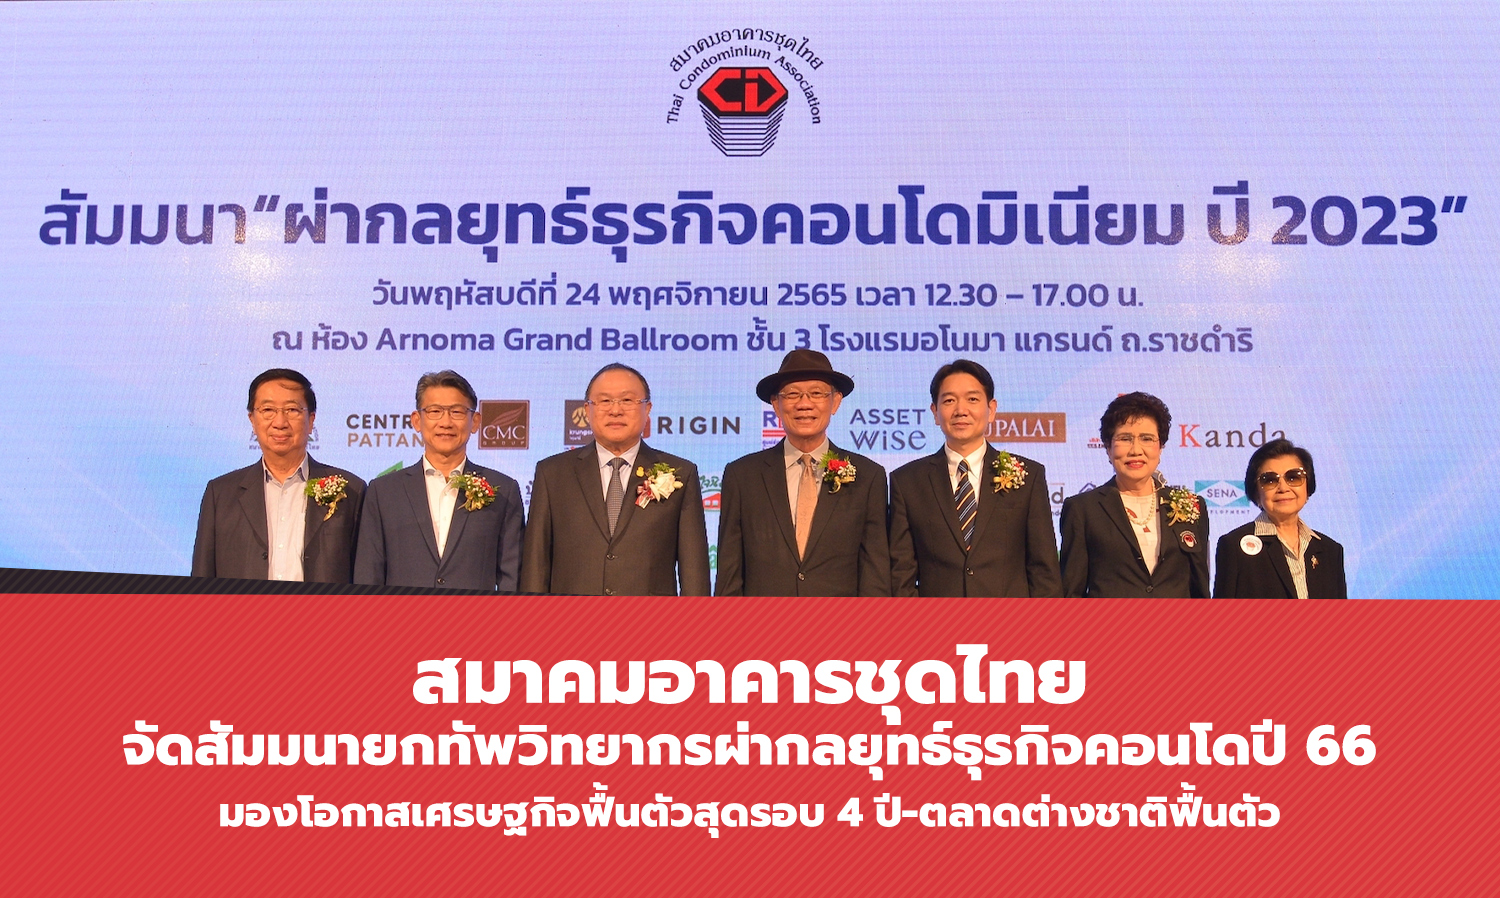 สมาคมอาคารชุดไทย จัดสัมมนายกทัพวิทยากรผ่ากลยุทธ์ธุรกิจคอนโดปี 66 มองโอกาสเศรษฐกิจฟื้นตัวสุดรอบ 4 ปี-ตลาดต่างชาติฟื้นตัว